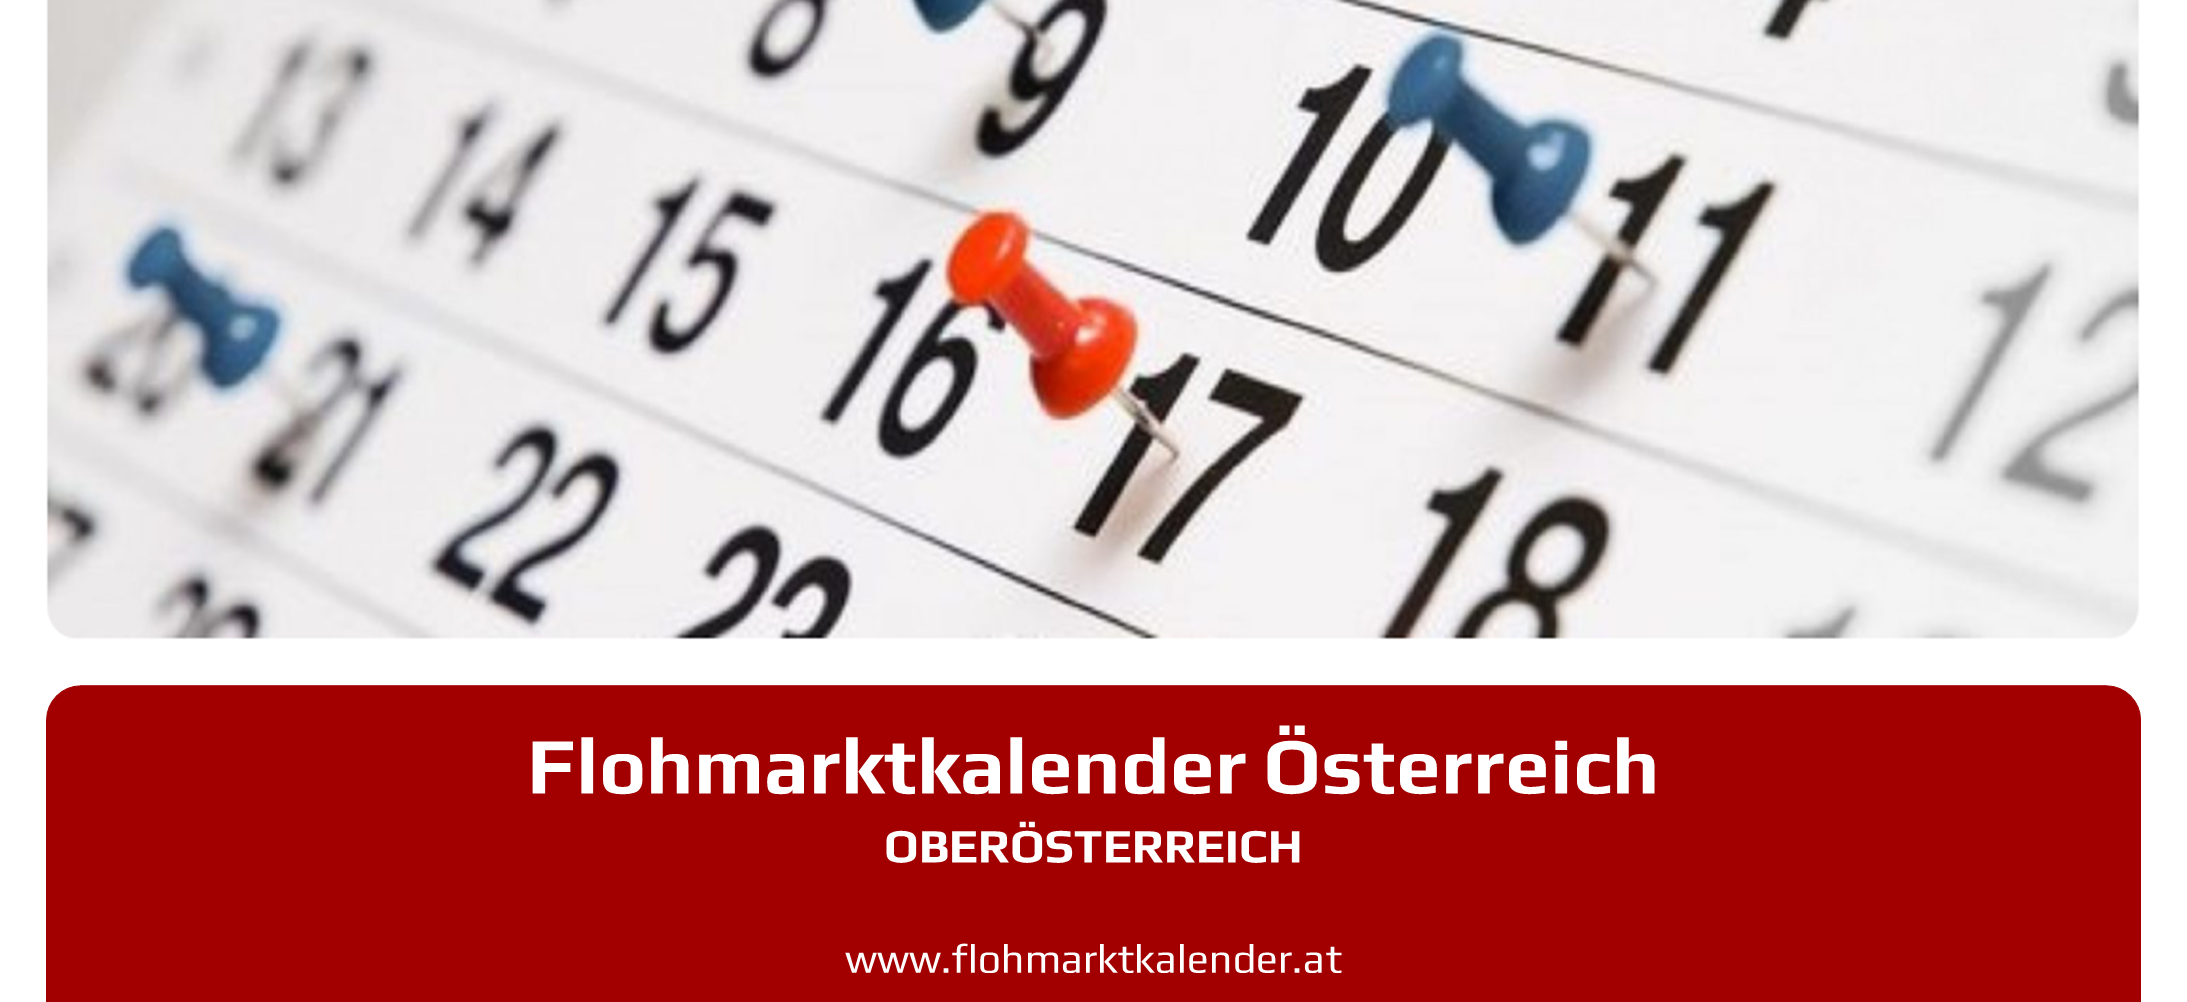 Flohmarktkalender Oberoesterreich 14